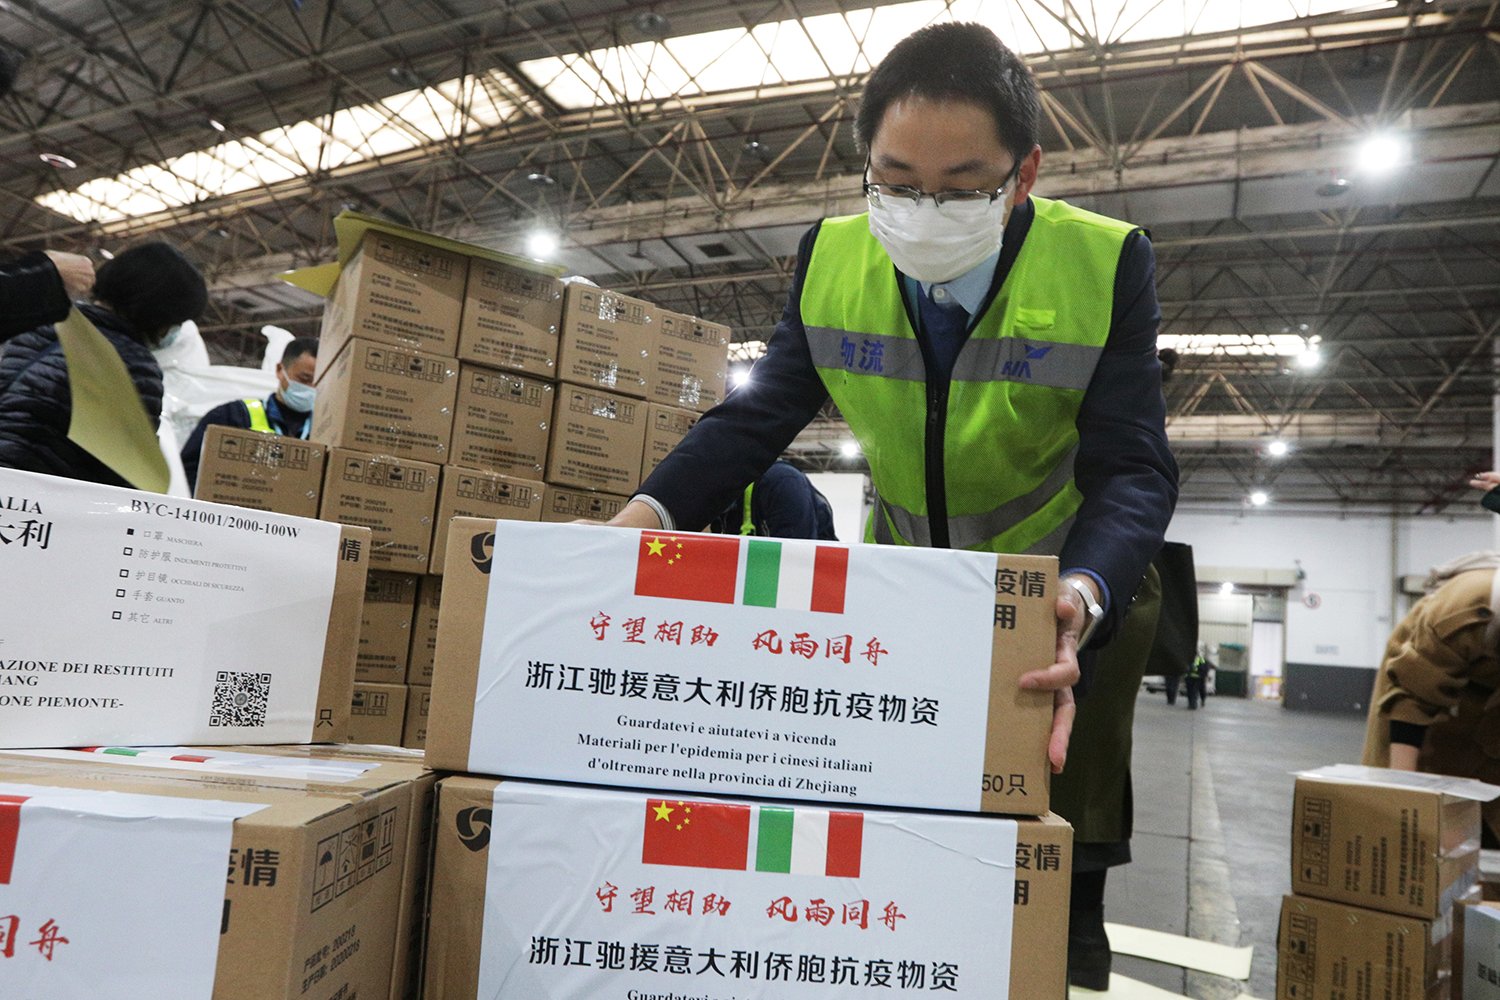  De ce preferă companiile chineze să lucreze cu muncitori din China chiar şi în Europa